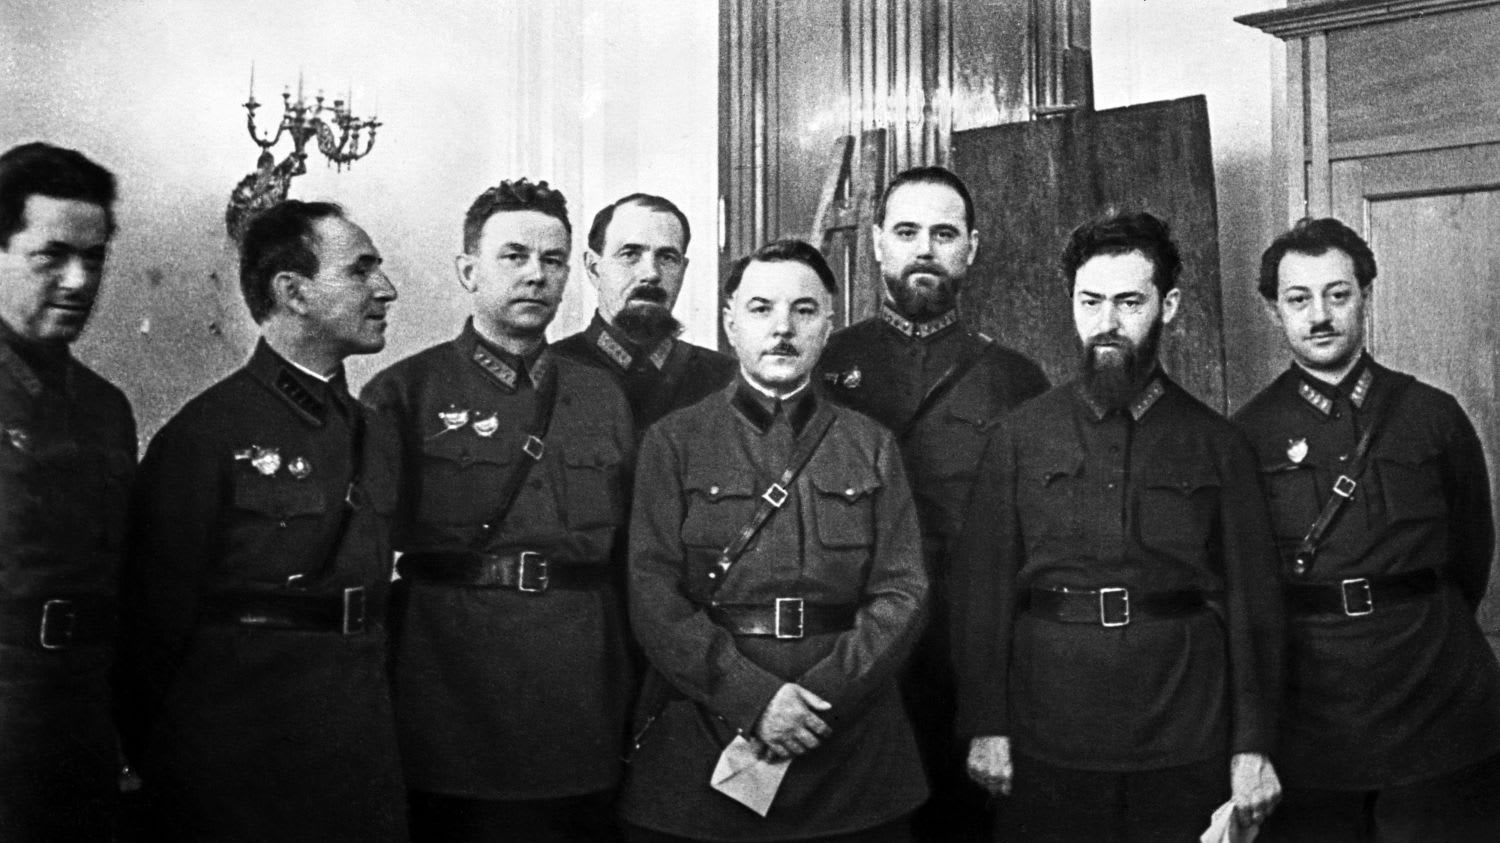 Дело Тухачевского": как начались массовые репрессии в Красной армии - ТАСС